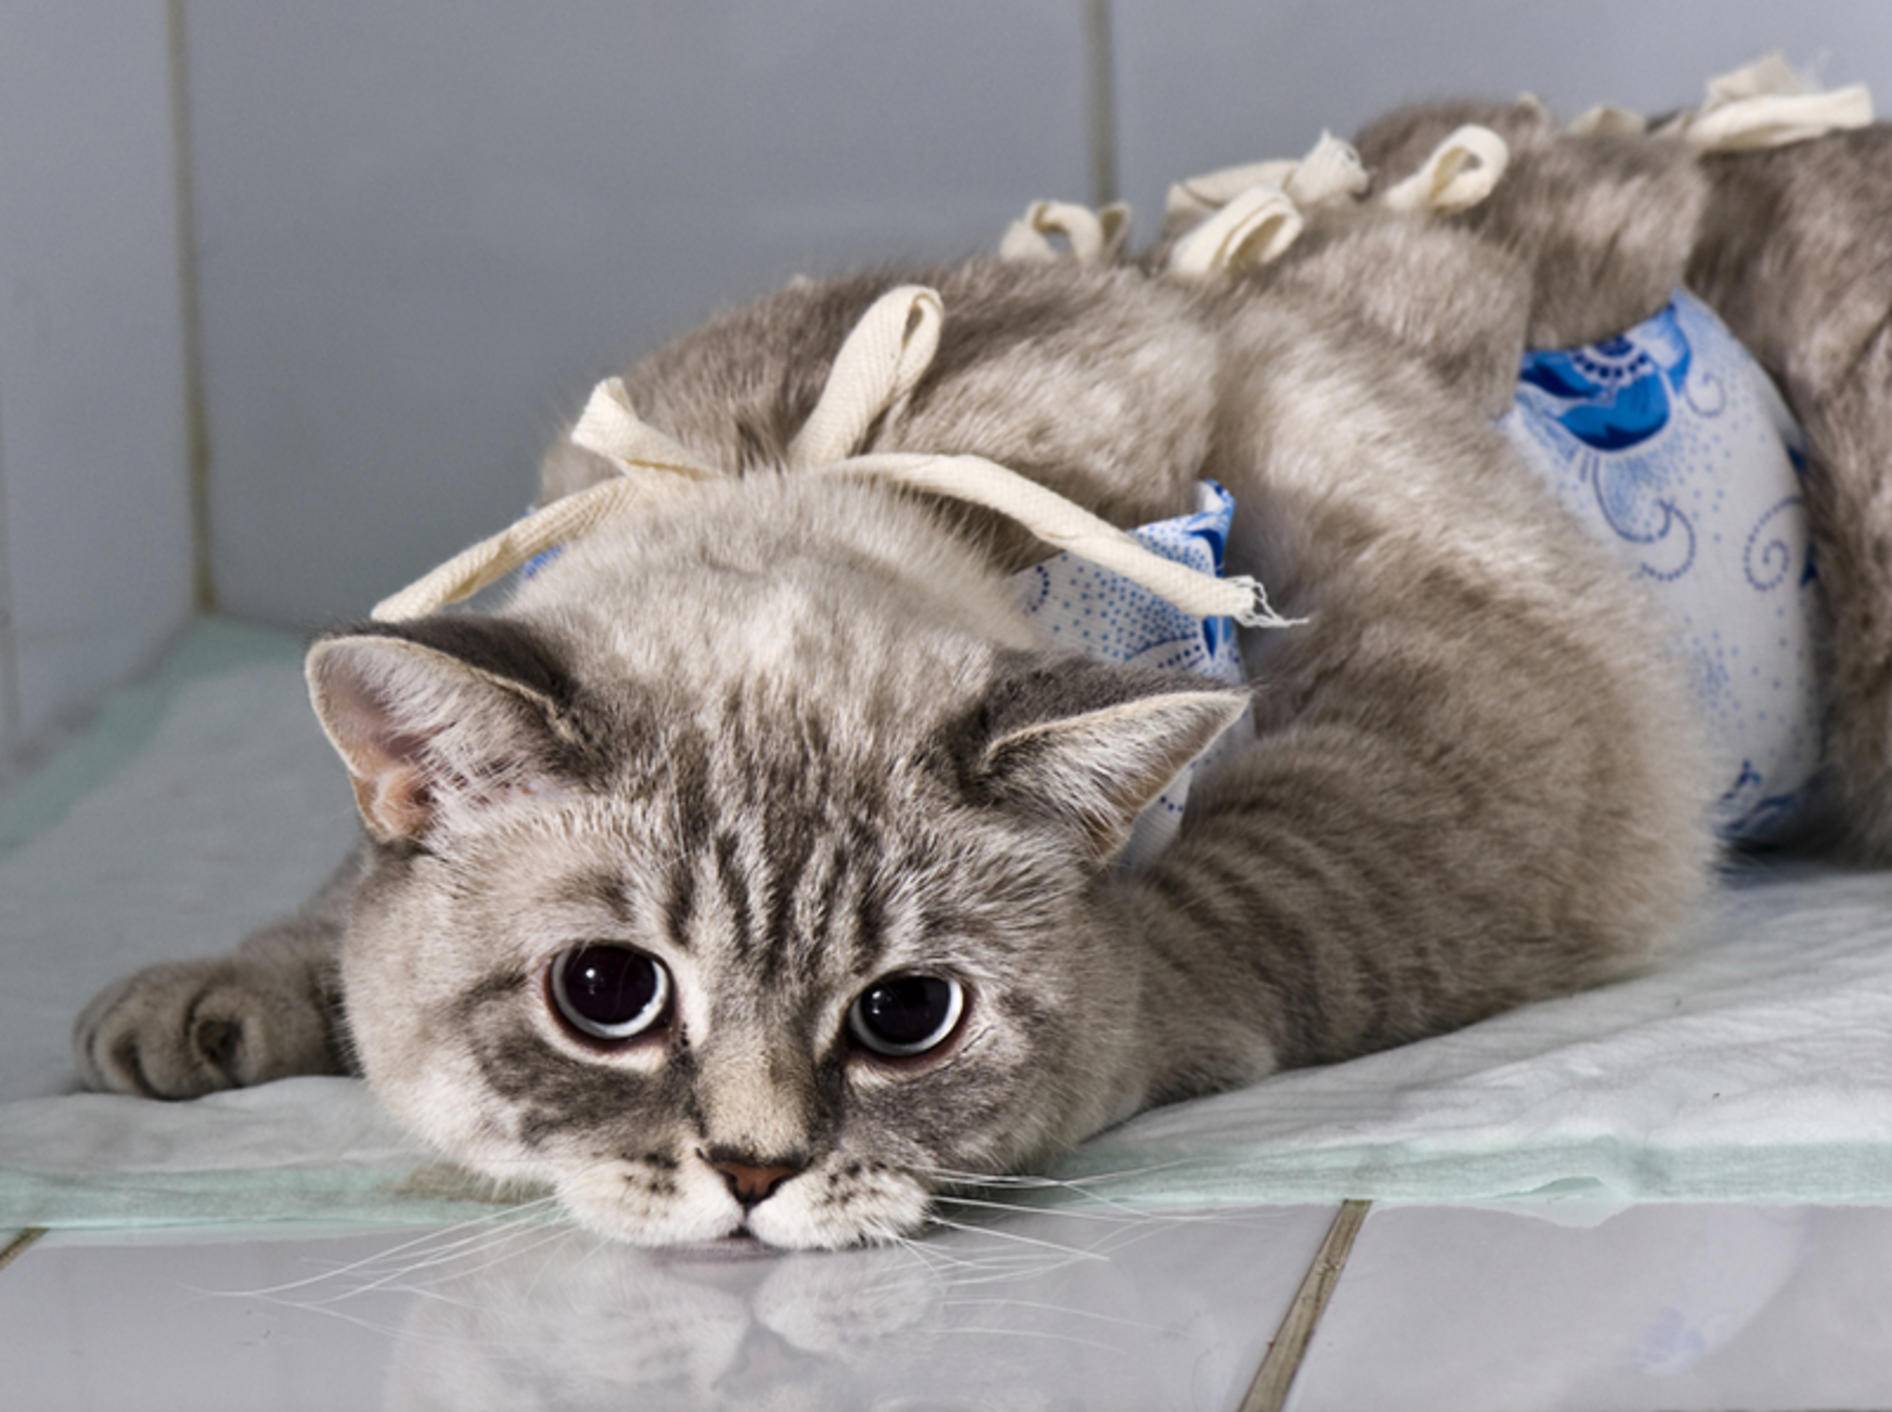 Knochenbrüche bei Katzen sind immer ein Fall für den Tierarzt – Bild: Shutterstock / Kachalkina Veronika